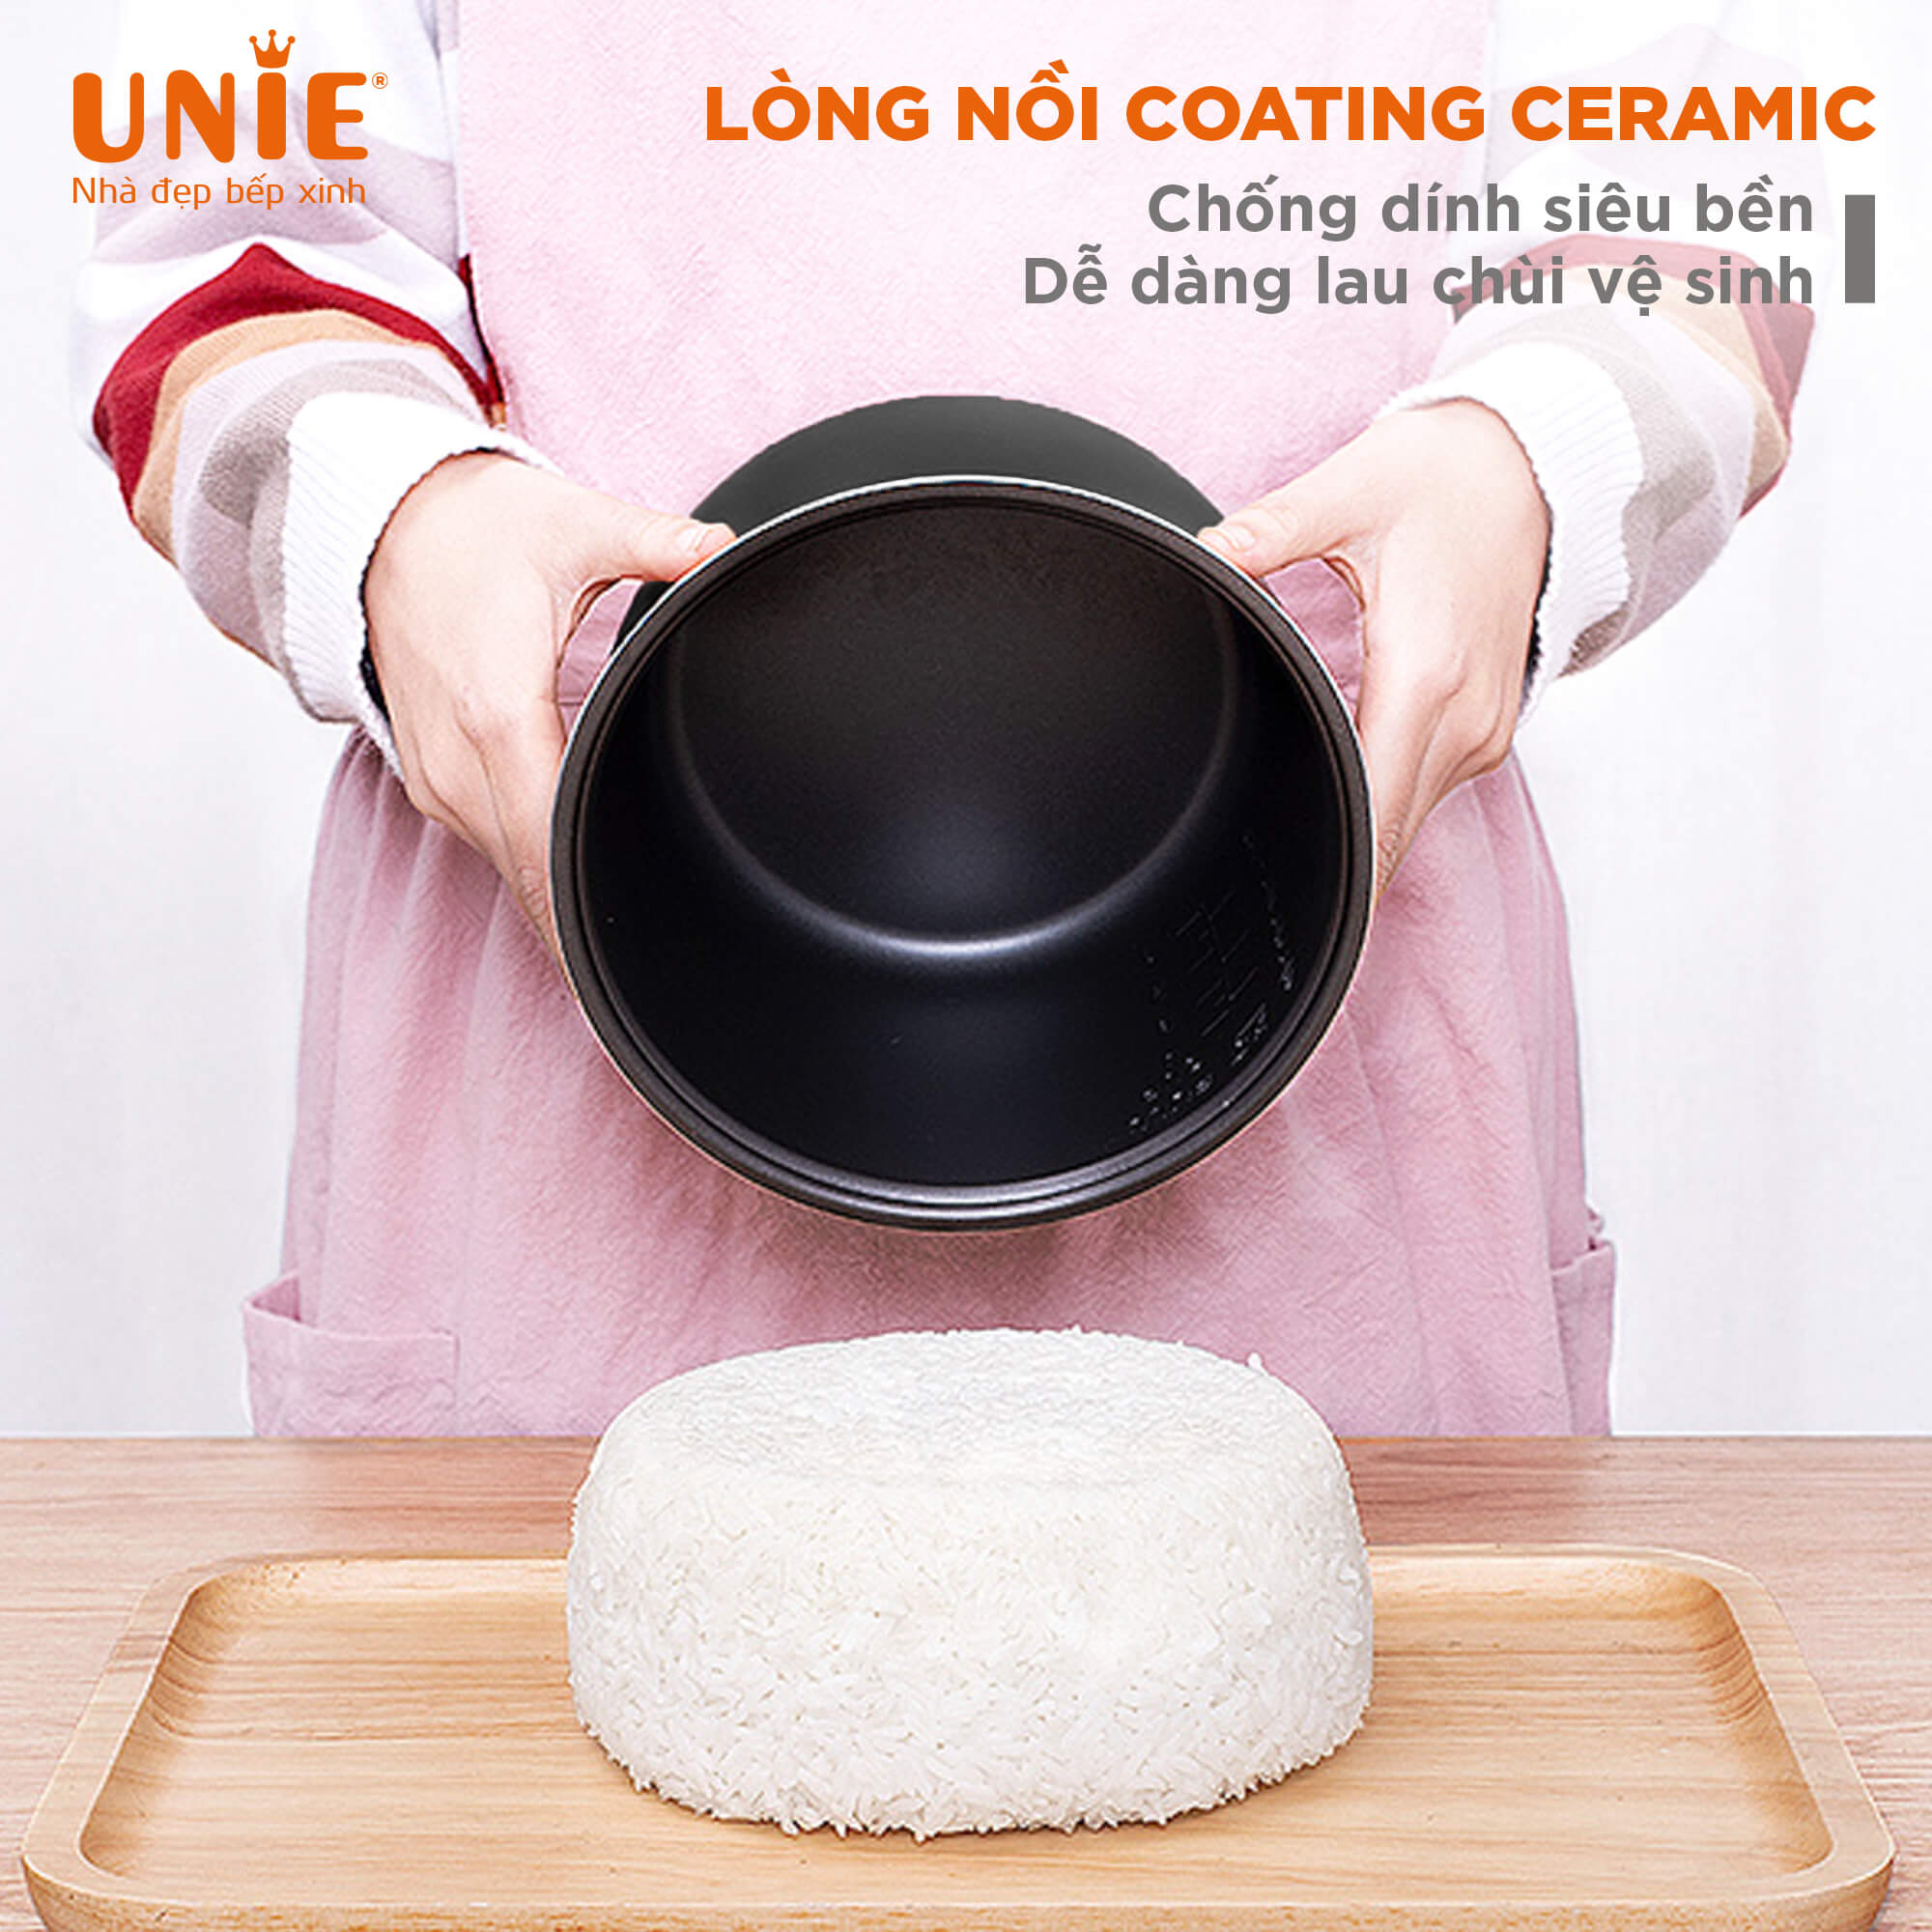 Nồi cơm điện UNIE UEC1572B,Công nghệ ủ nhiệt 3D,Lòng nồi gốm cao cấp,giữ ấm lên tới 24h, 16 chương trình nấu đa dạng-hàng chính hãng UNIE